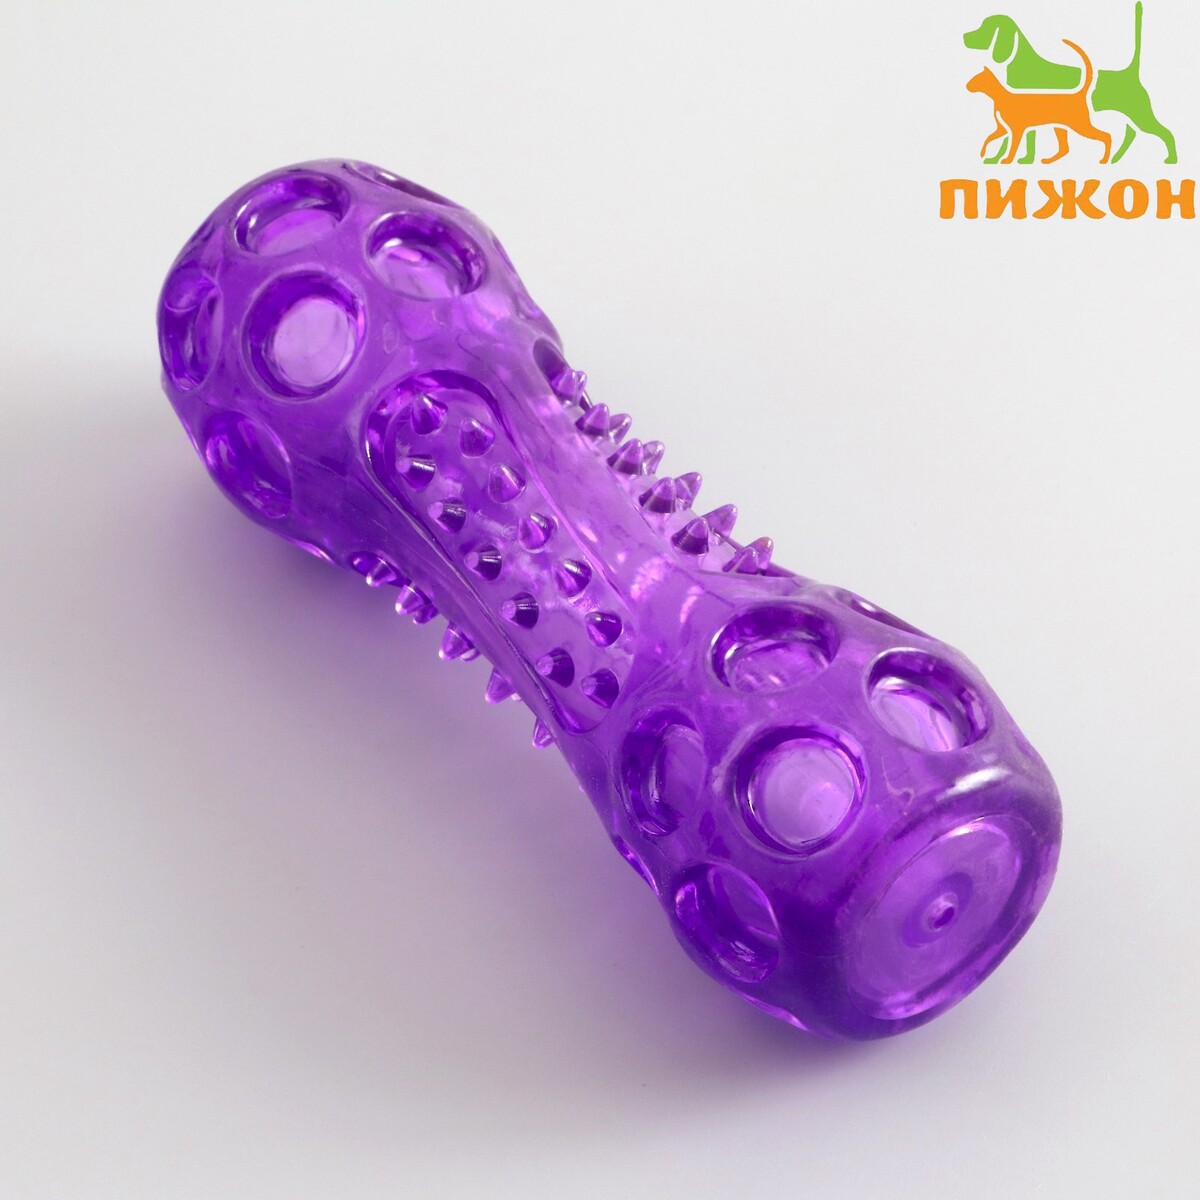 Игрушка-палка из термопластичной резины с утопленной пищалкой, фиолетовая гимнастическая палка live pro weighted bar lp8145 5